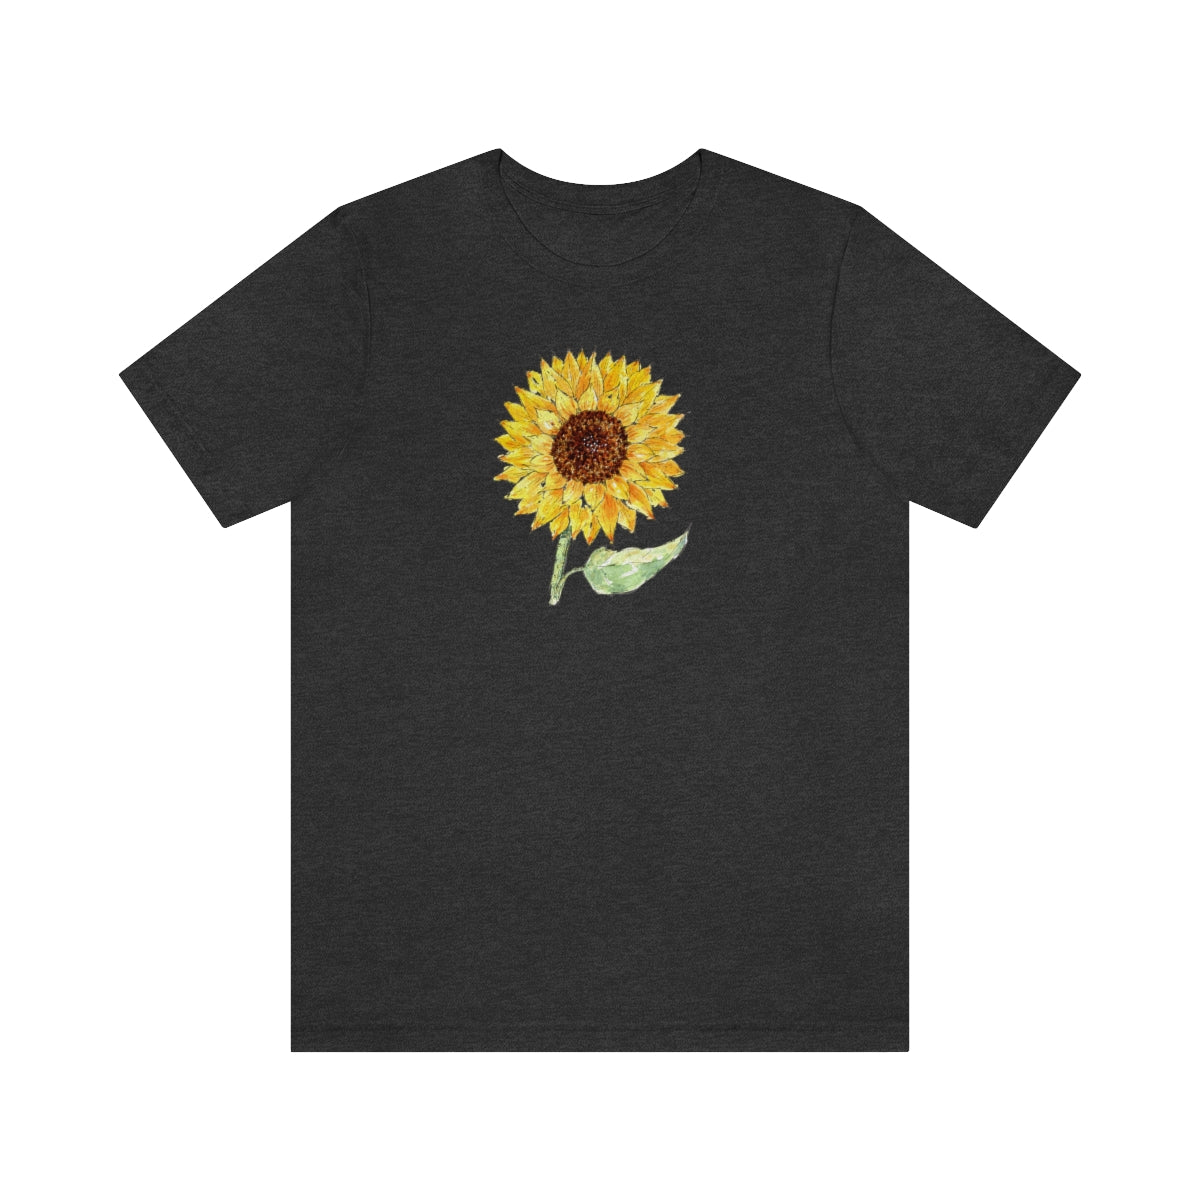 Sunflower, Unisex Jersey Short Sleeve Tee